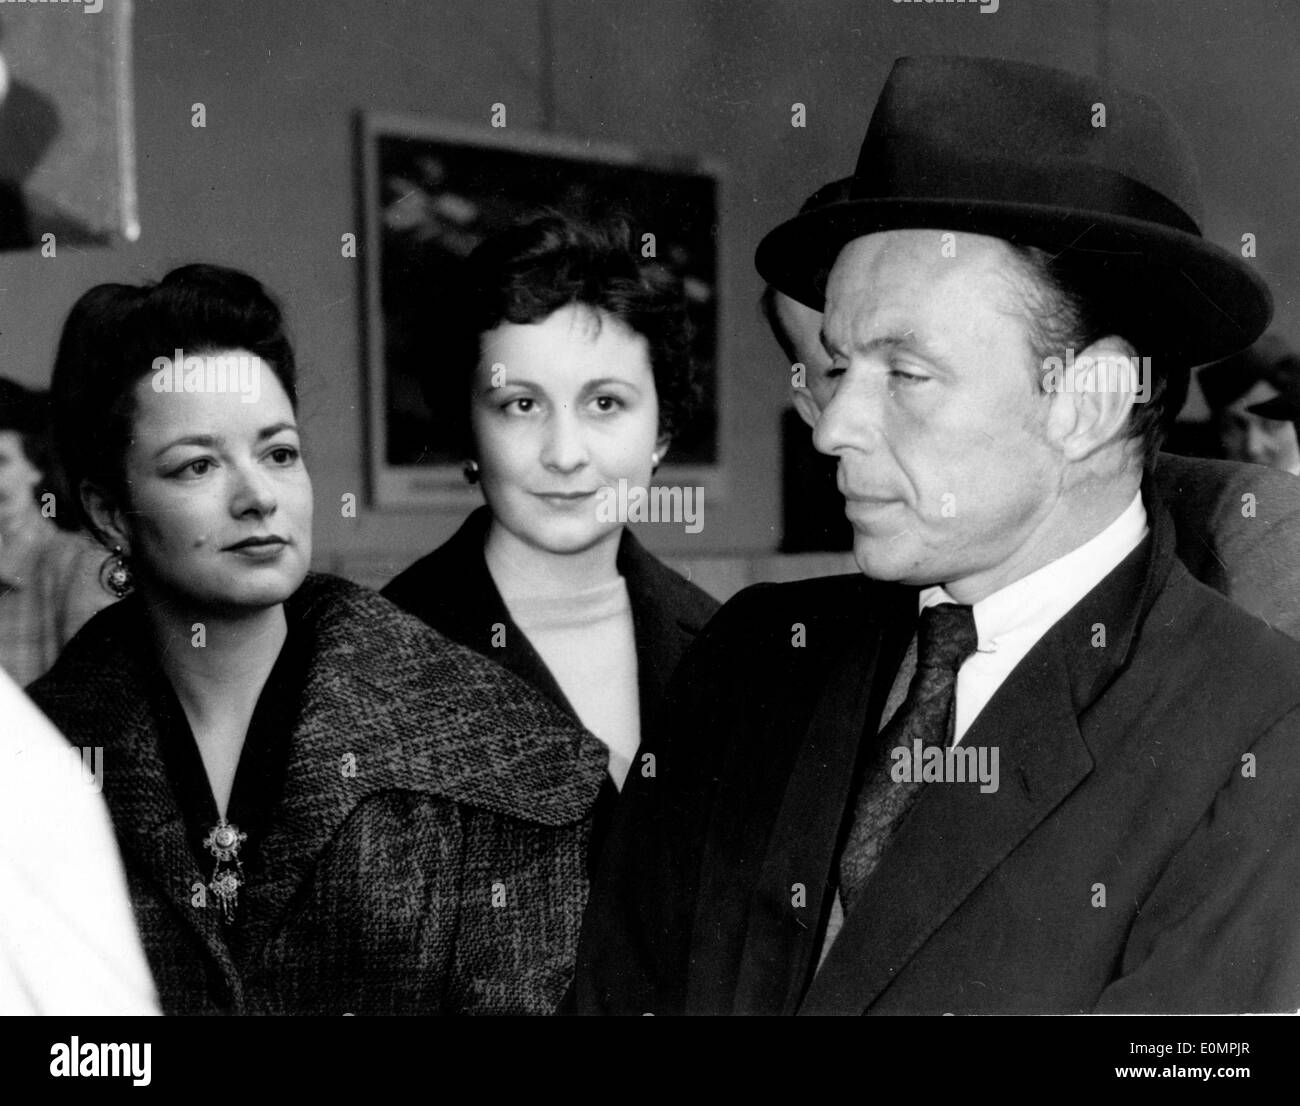 Chanteur Frank Sinatra être admiré par les femmes à l'aéroport. Banque D'Images